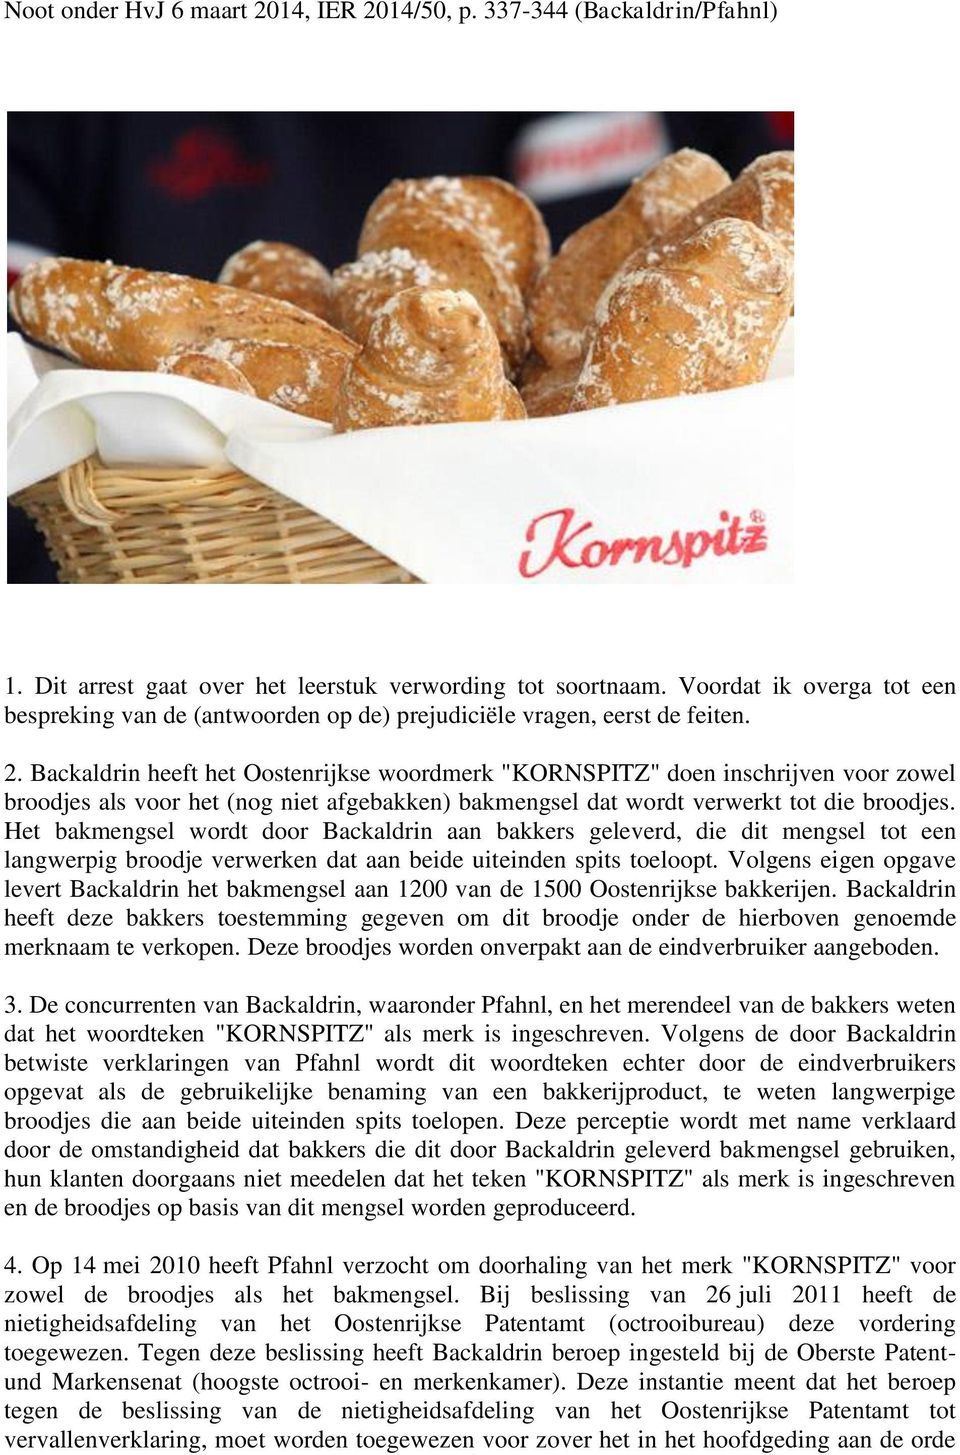 Backaldrin heeft het Oostenrijkse woordmerk "KORNSPITZ" doen inschrijven voor zowel broodjes als voor het (nog niet afgebakken) bakmengsel dat wordt verwerkt tot die broodjes.